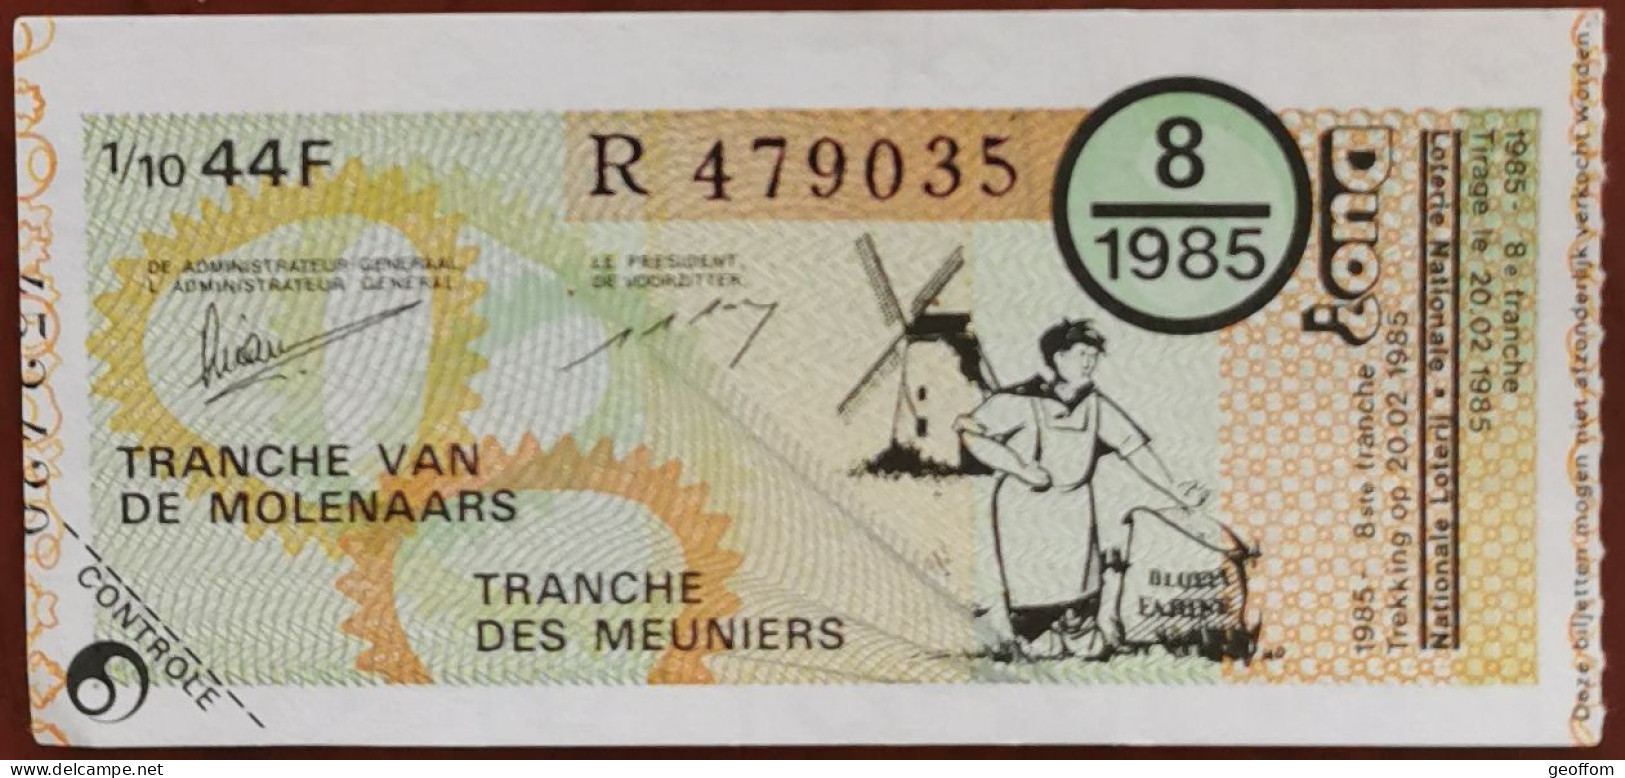 Billet De Loterie Nationale Belgique 1985 8e Tranche Des Meuniers - 20-2-1985 - Billetes De Lotería